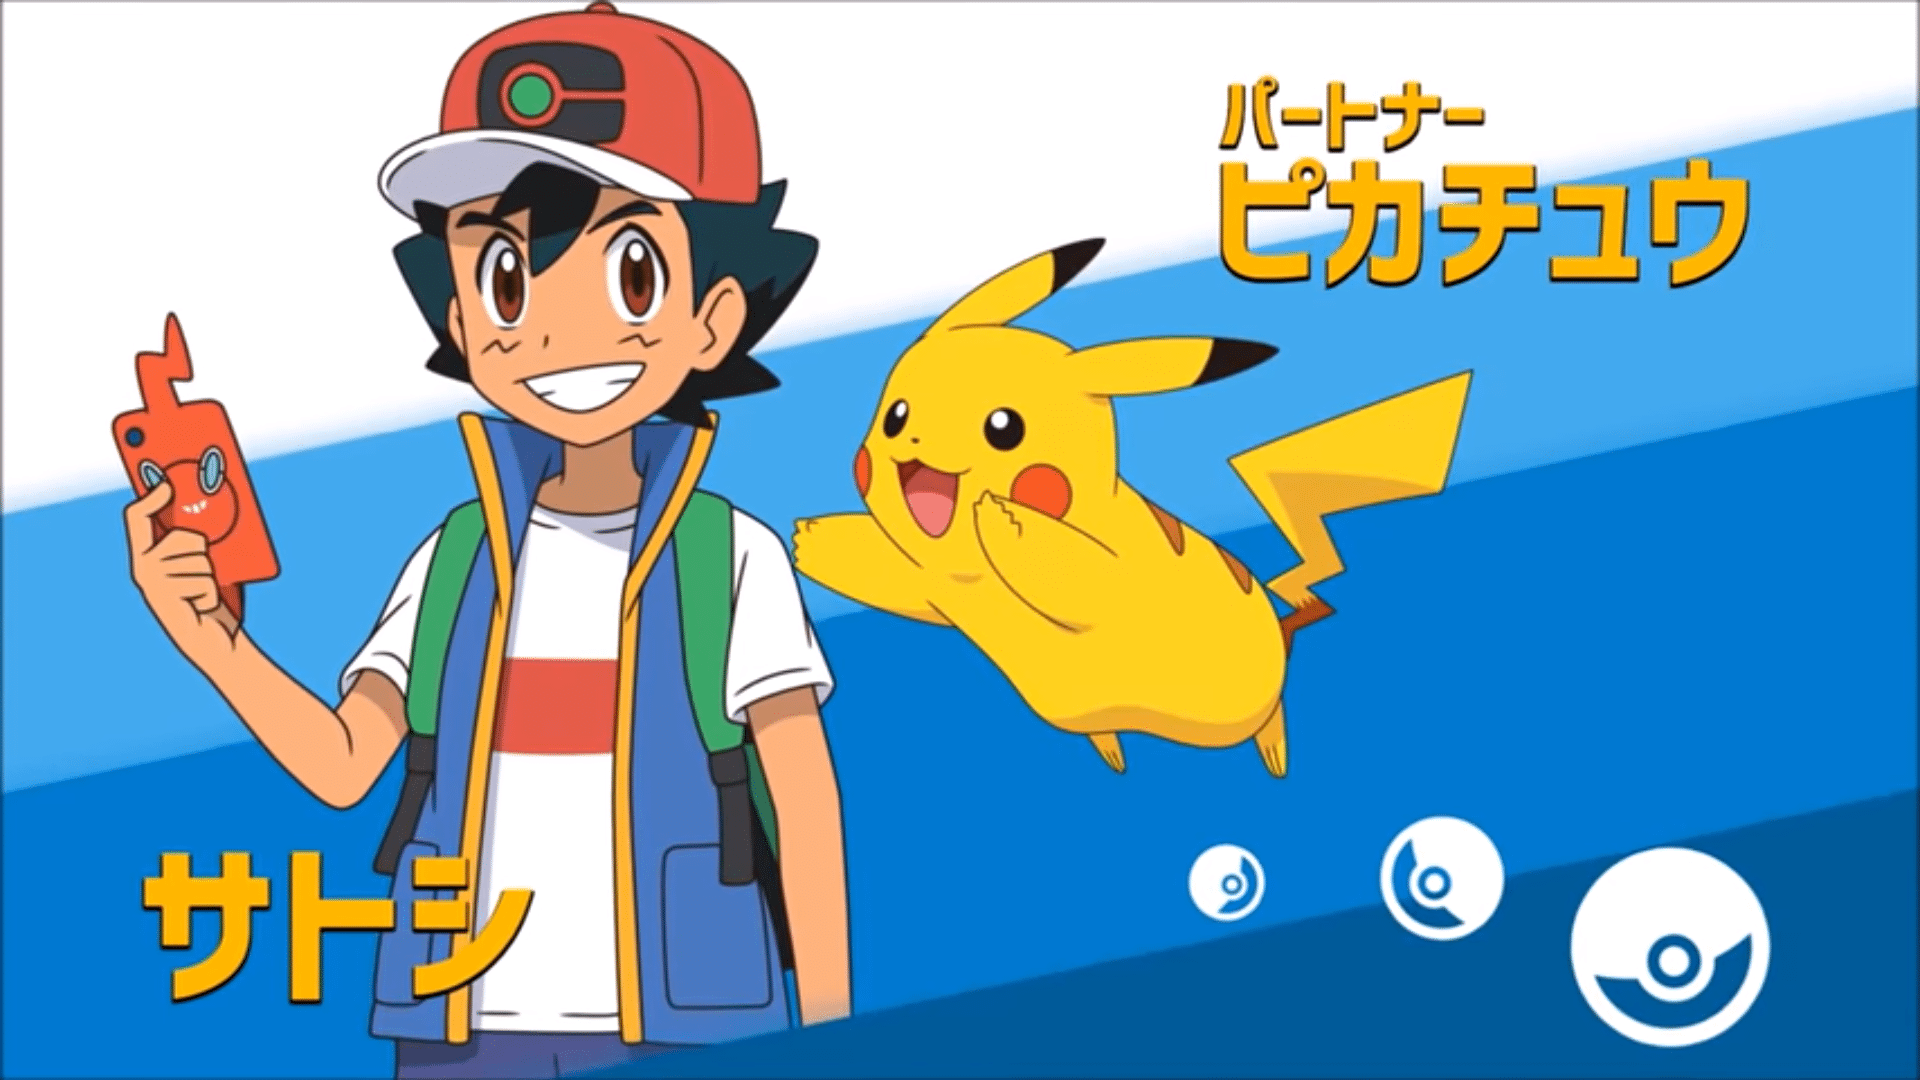 New Pokémon Anime Announced